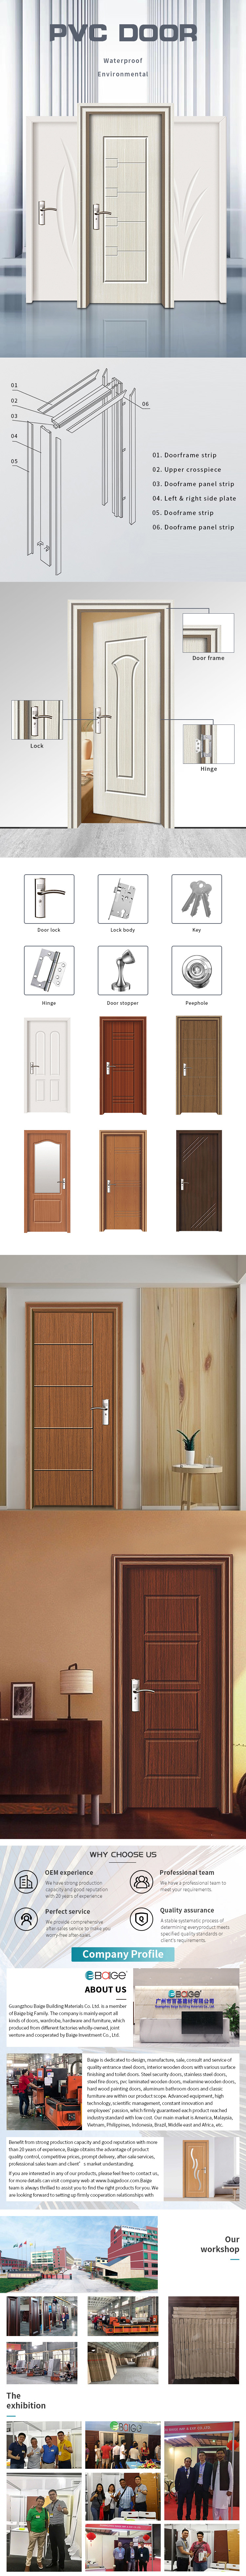 Factory Customized Solid Wood design Door MDF HDF Waterproof Plywood Veneer PVC Door